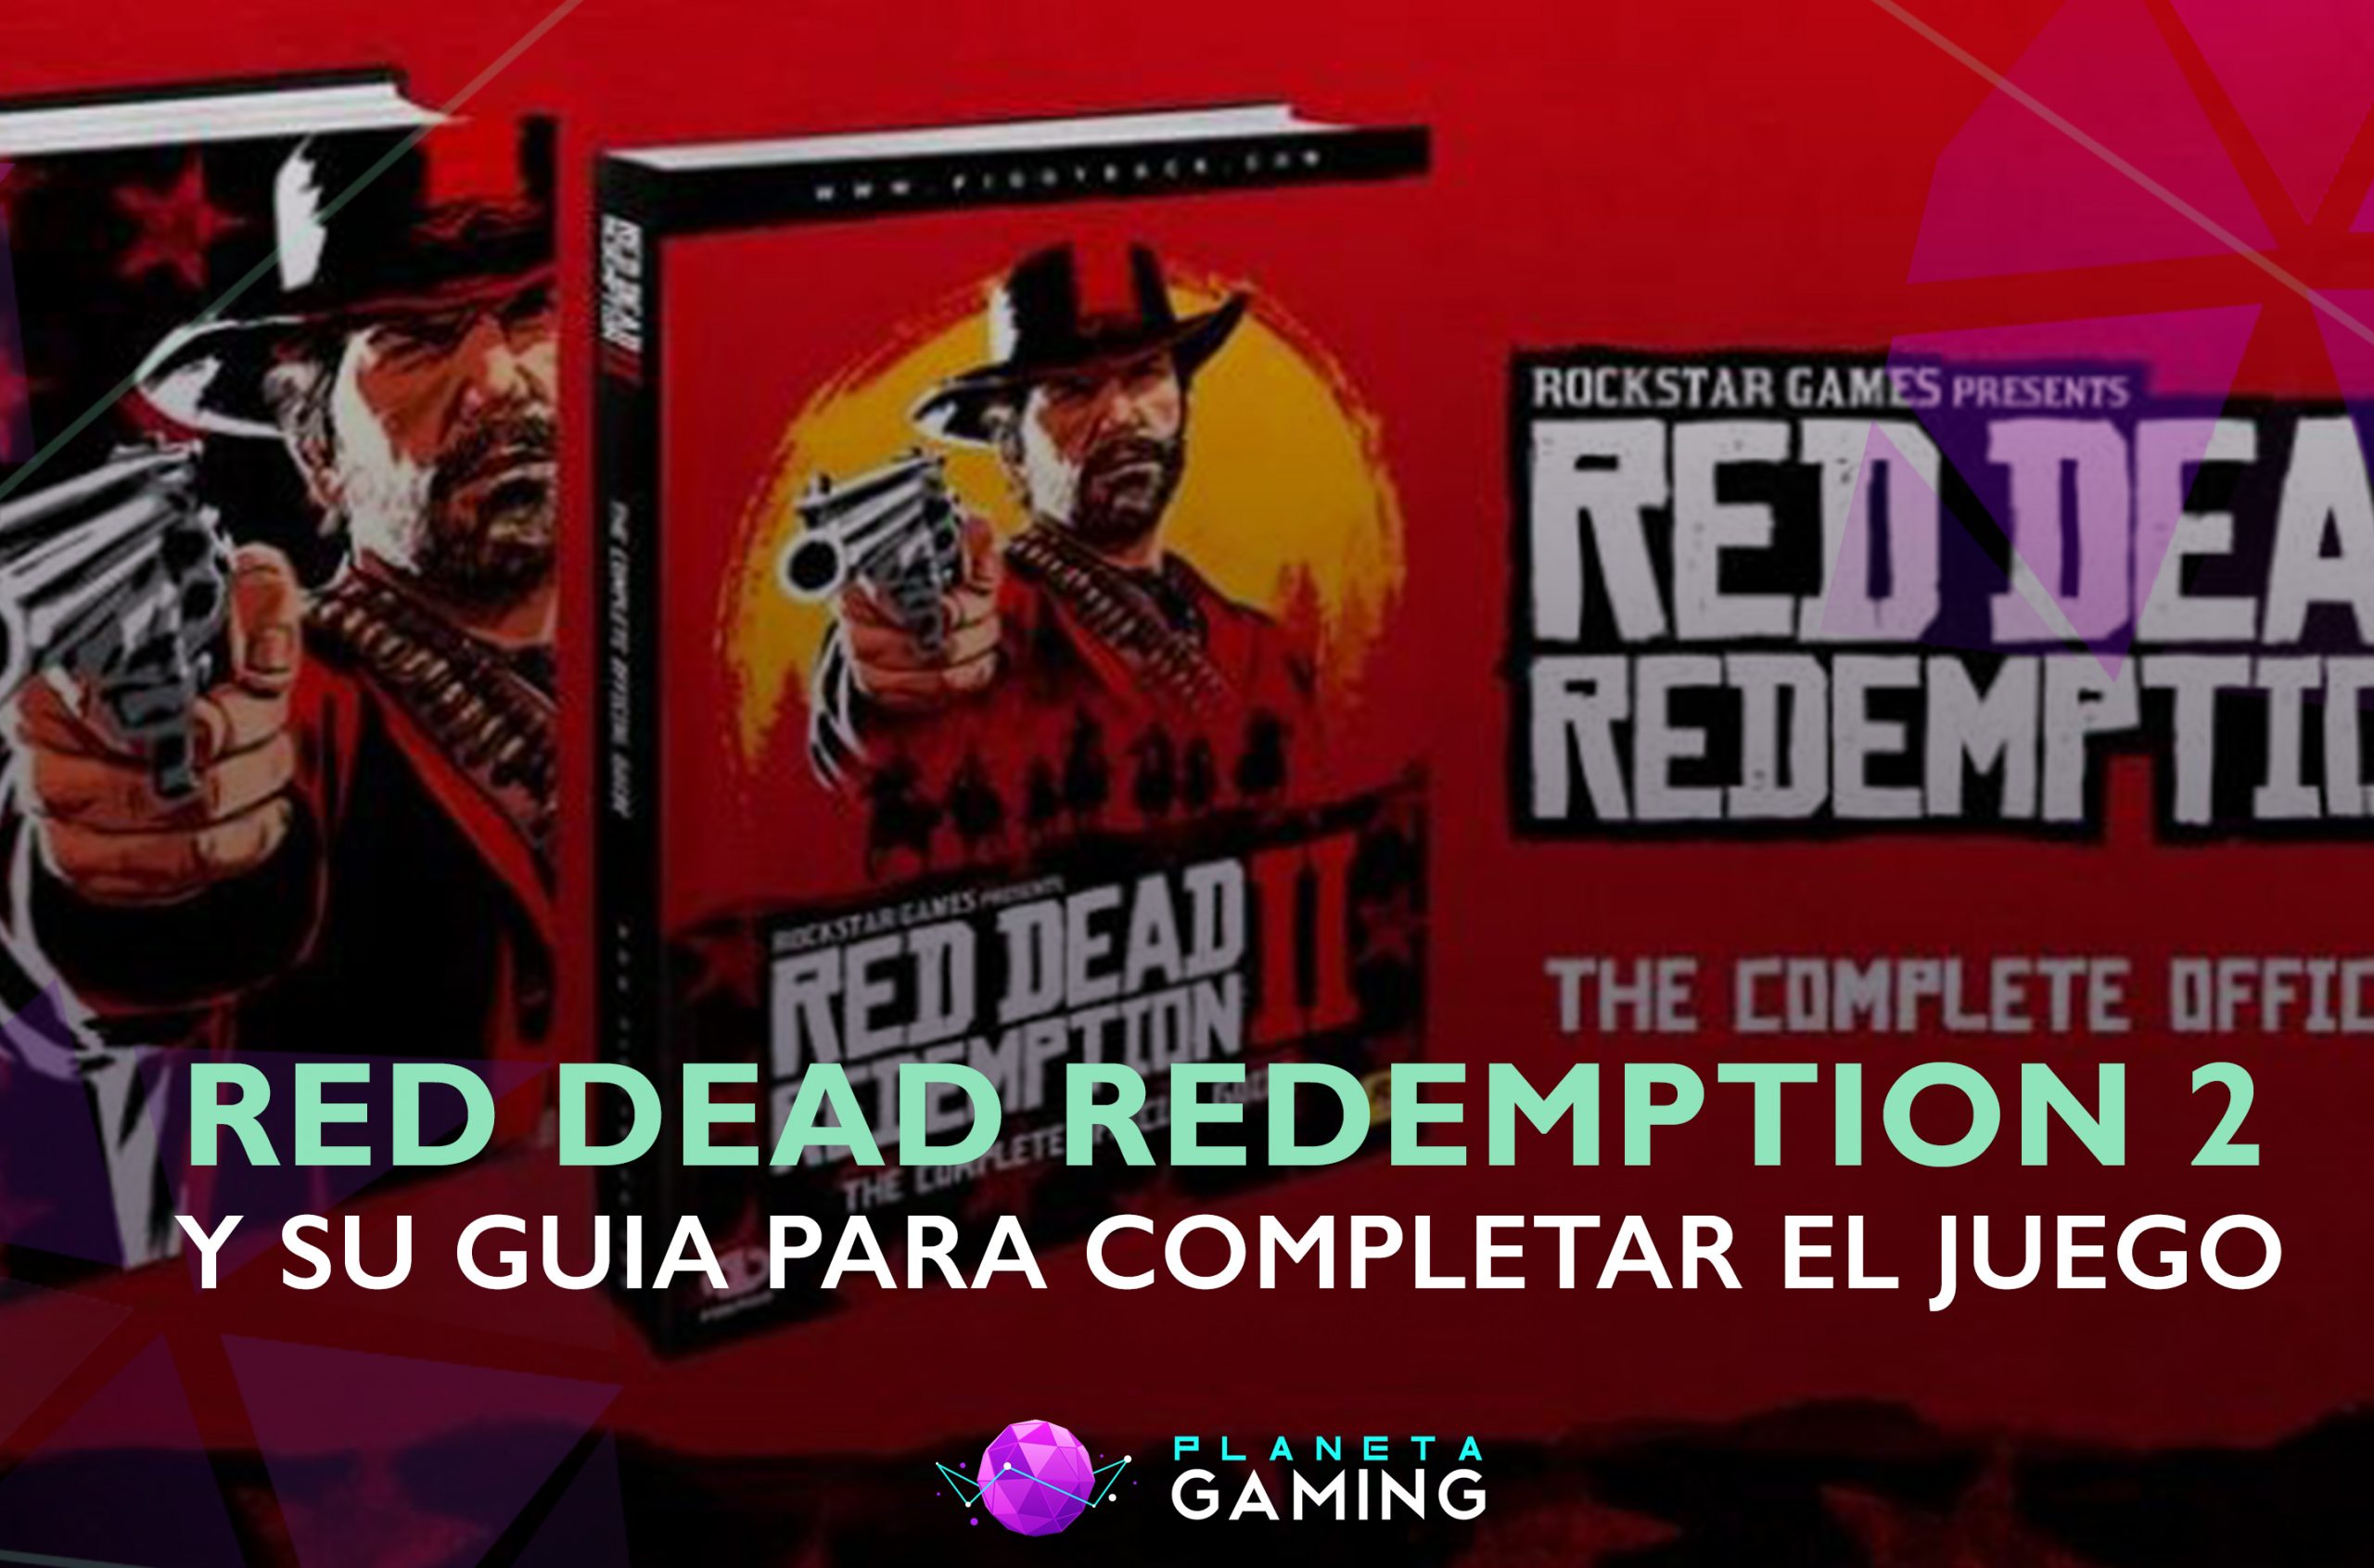 Ya esta disponible la guia oficial de Red Dead Redemption 2